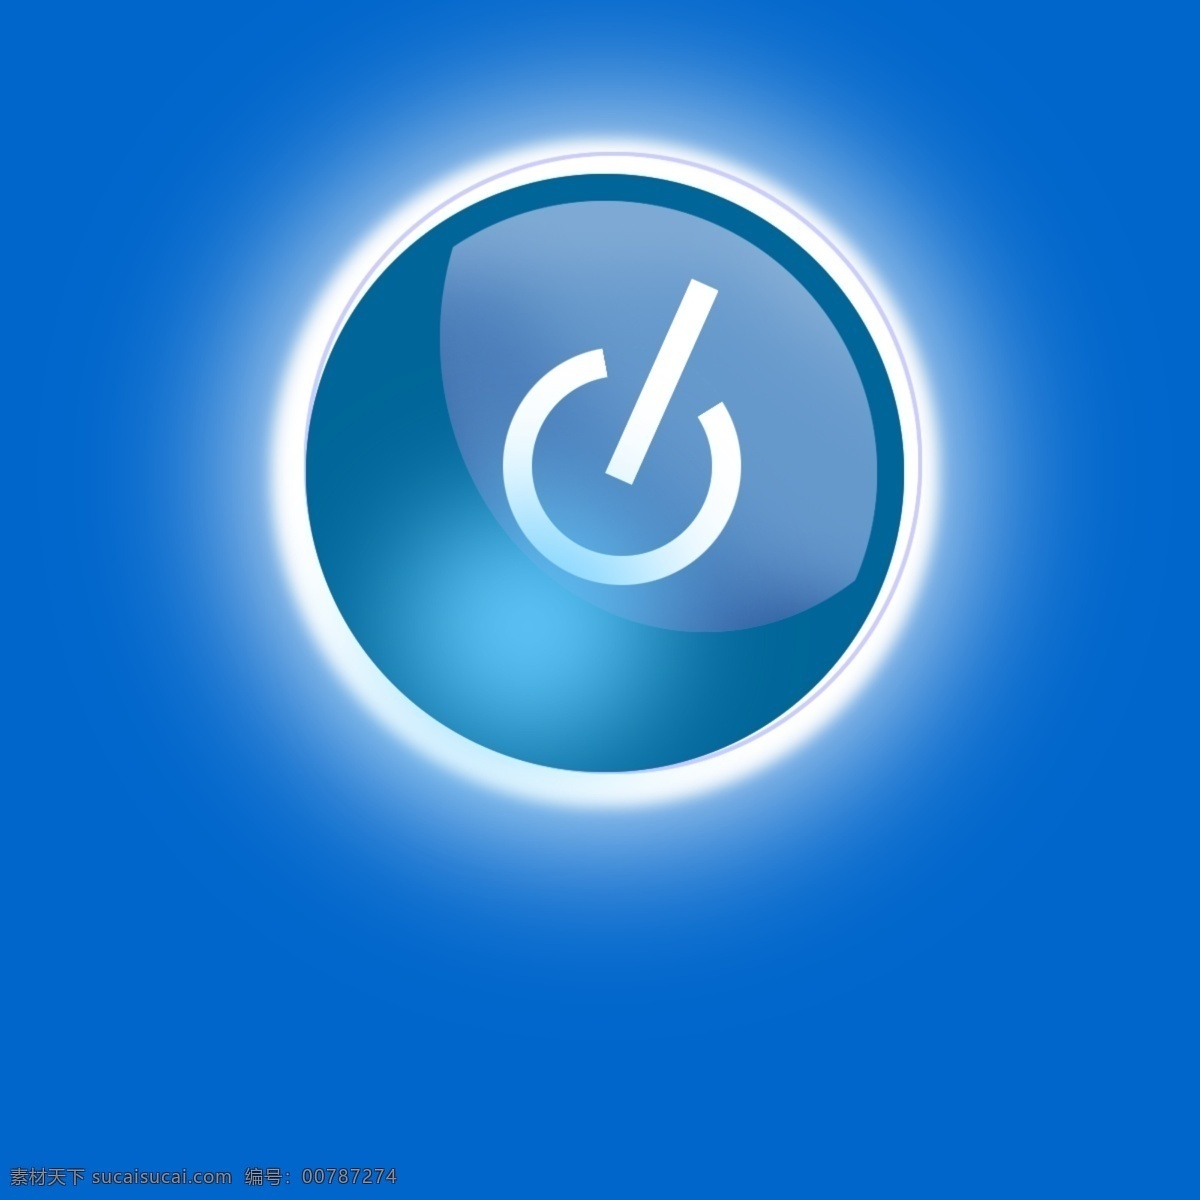 蓝色发光按钮 蓝白调 抽象卡通图标 斜对称 发光发亮 单体库 web 界面设计 图标按钮